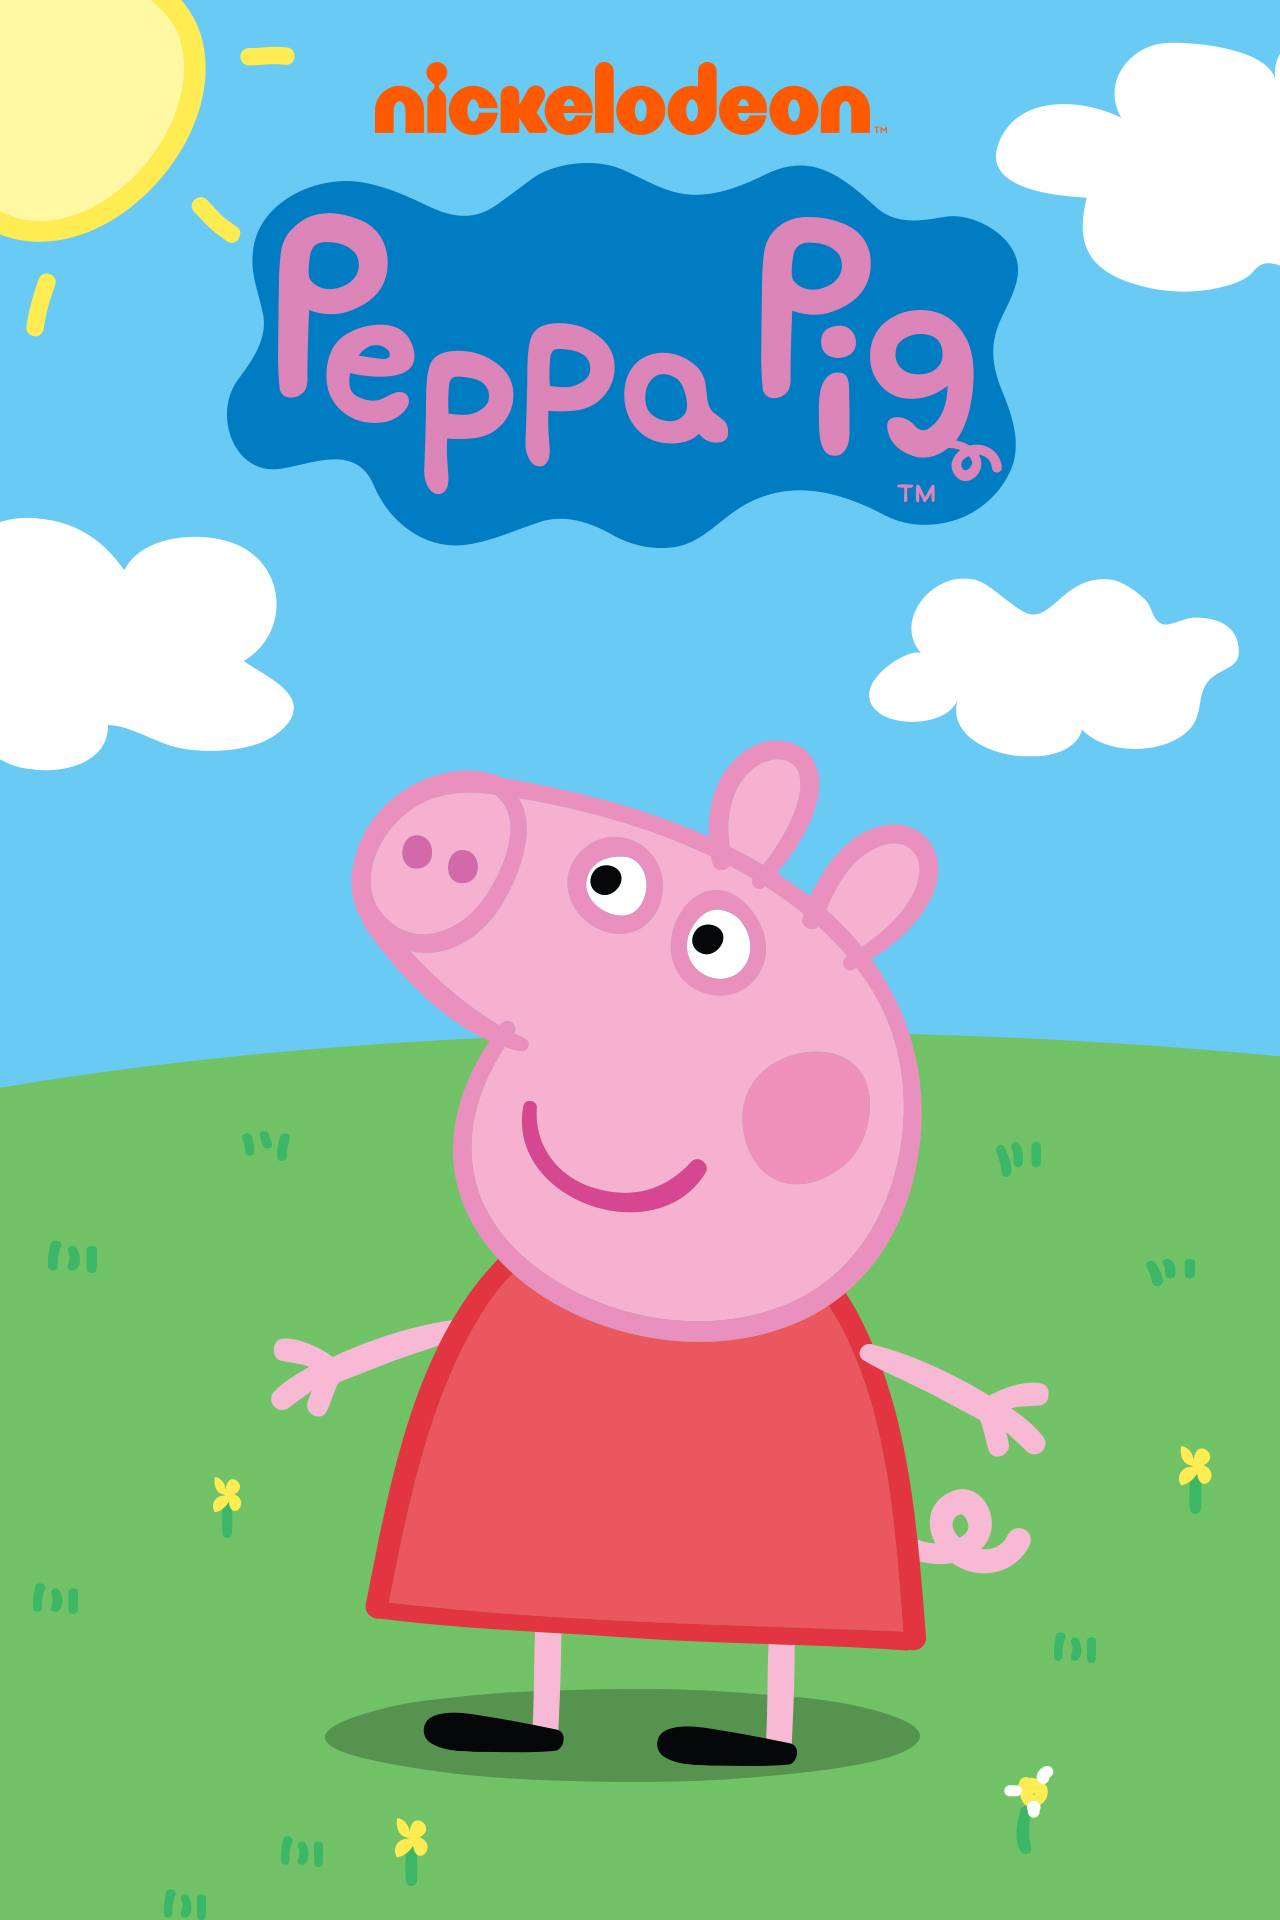 Peppa Pig - Official TV Series | Nick Jr. US